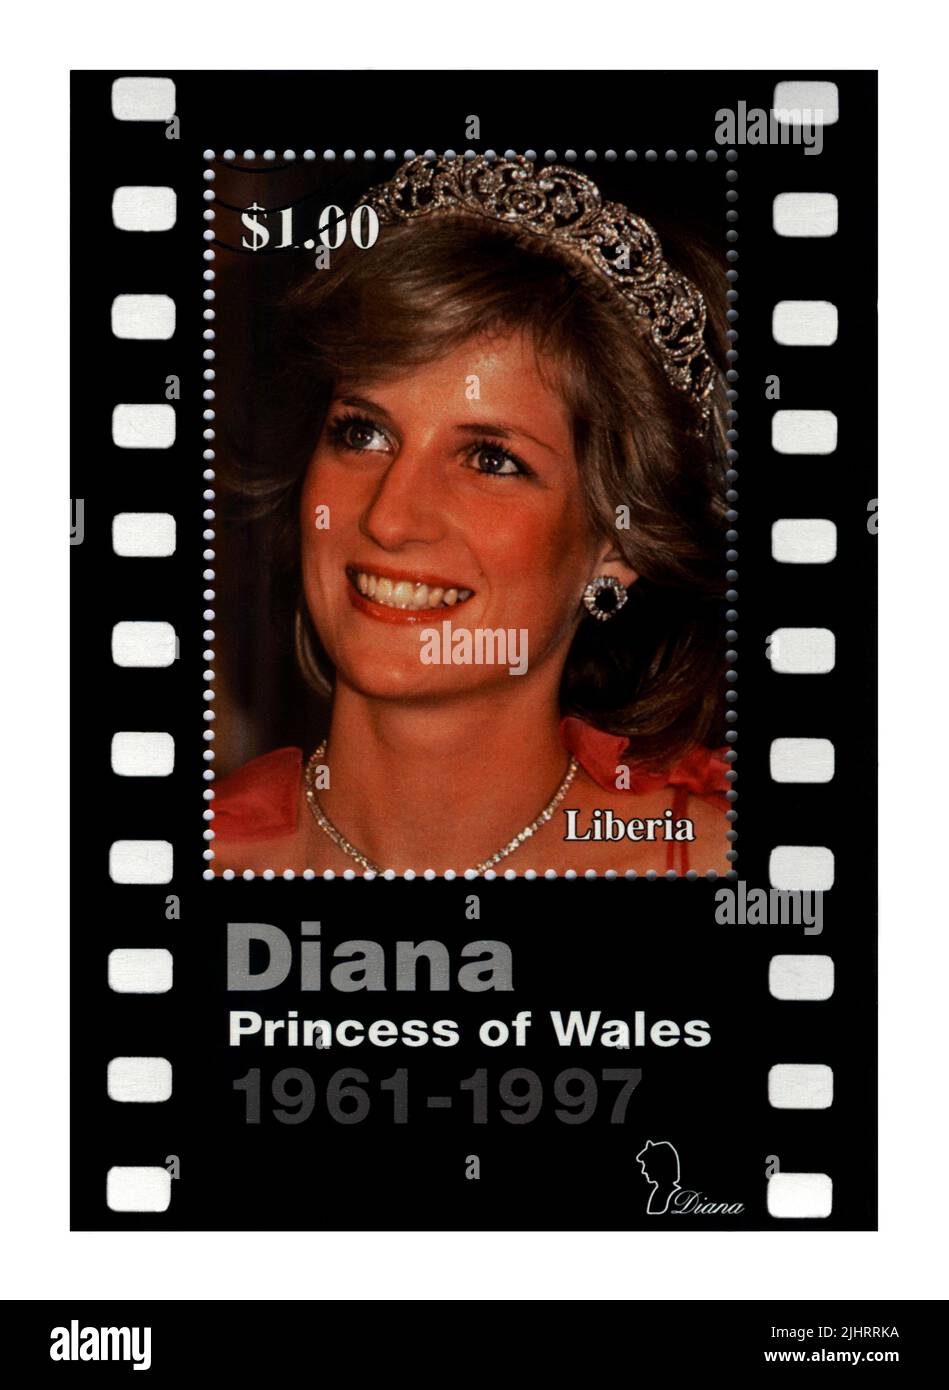 21st compleanno della principessa Diana. Cancellato timbro DELLA LIBERIA dedicato alla memoria di Lady di, Principessa di Galles. vintage post timbro isolato Foto Stock